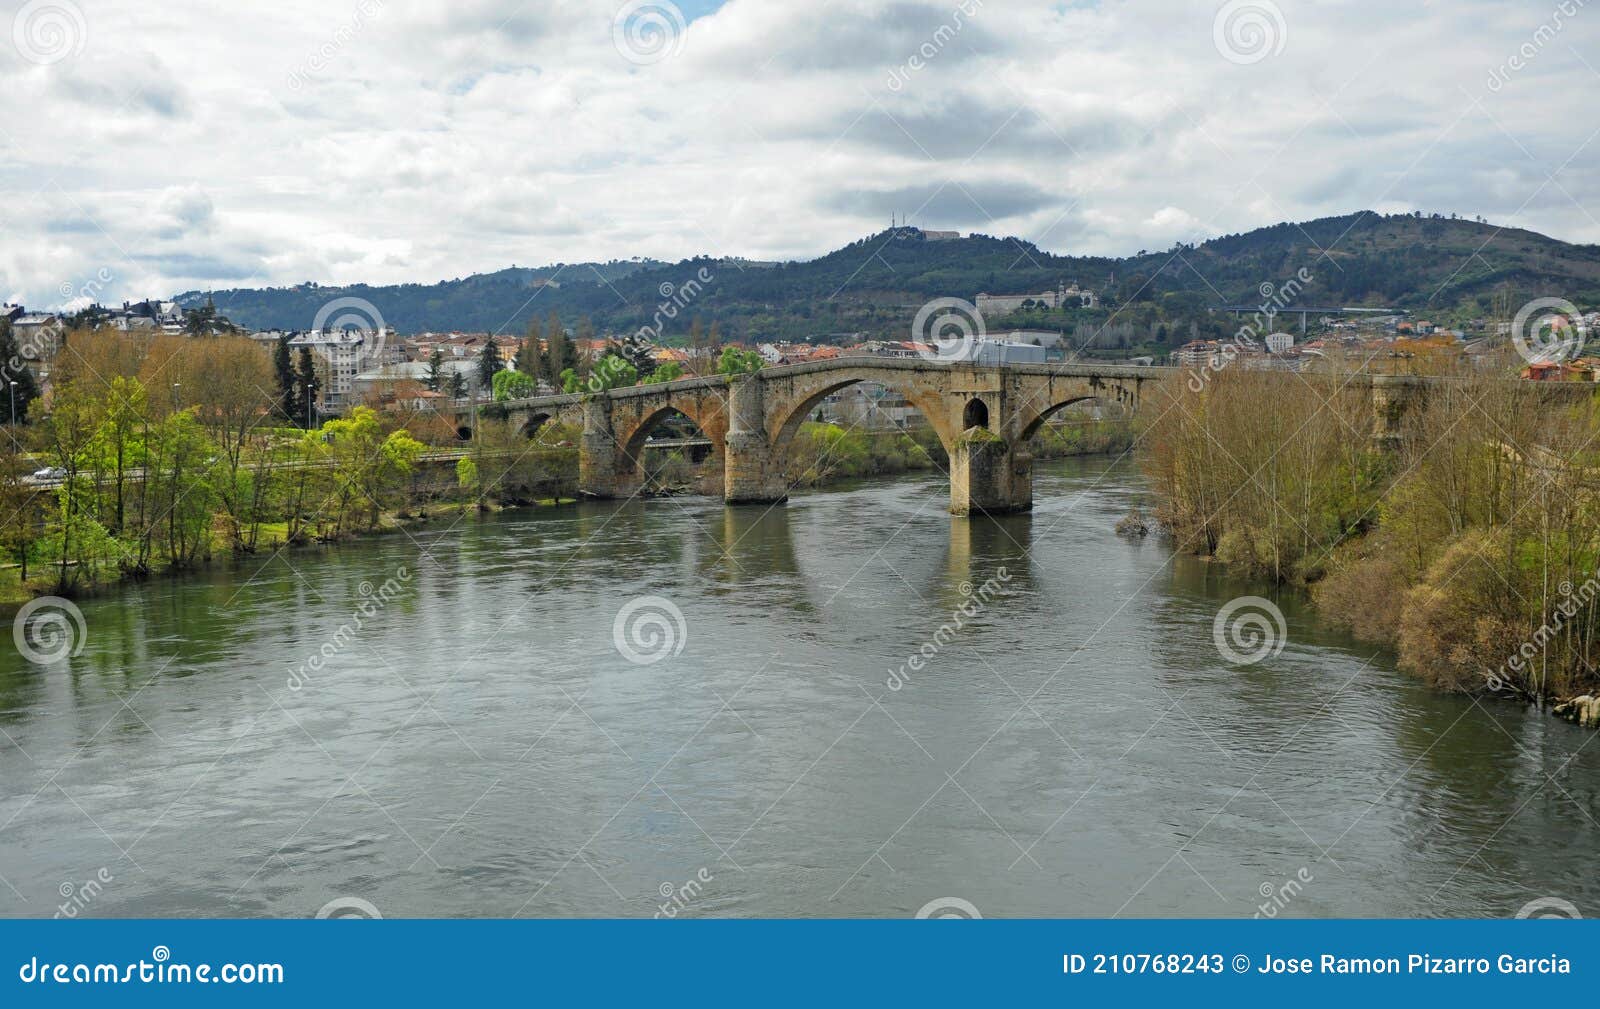 puente medieval puente romano sobre el rio miÃÂ±o en ourense orense, galicia, espaÃÂ±a